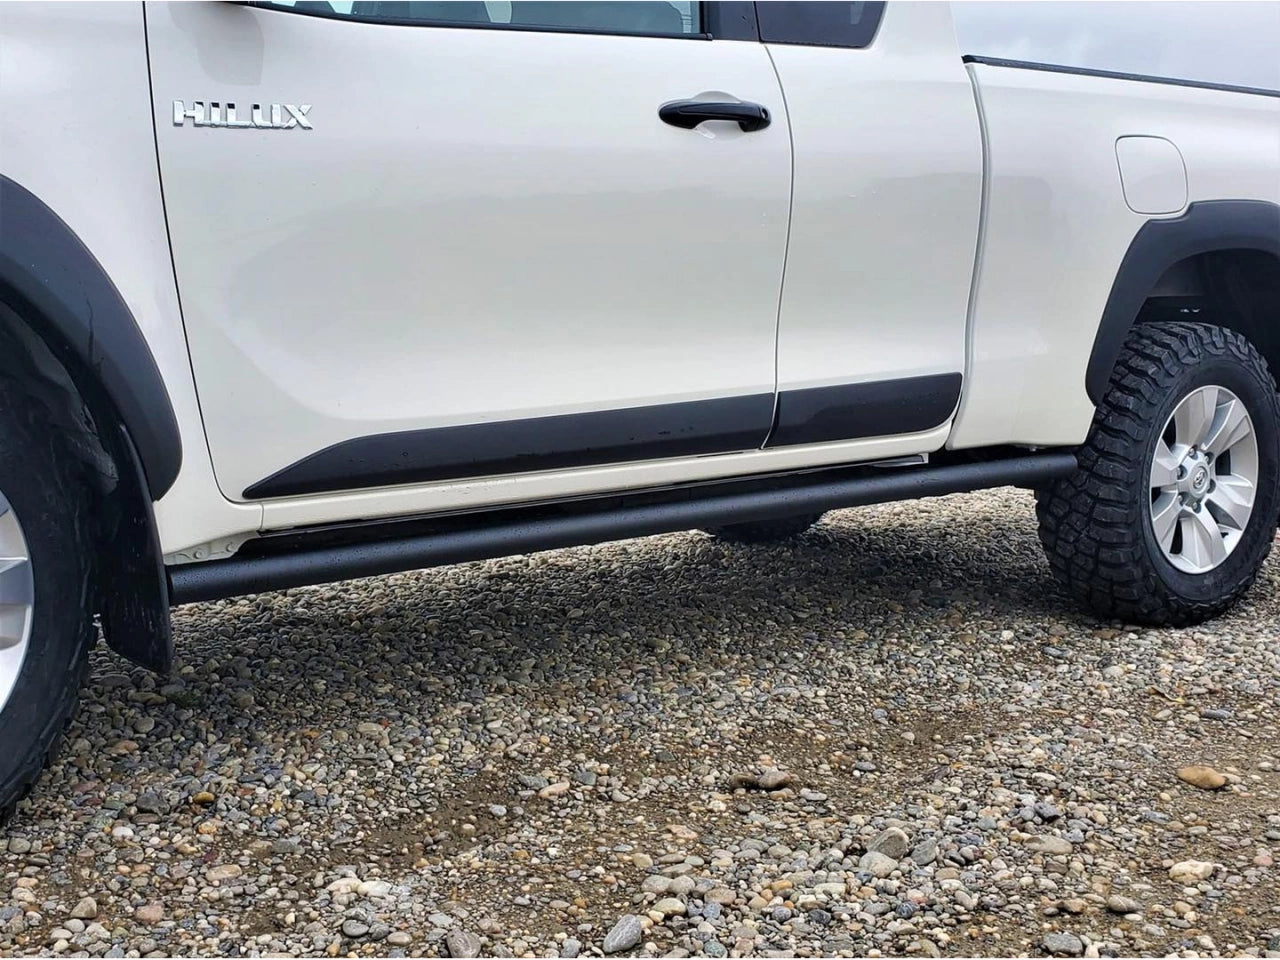 Protectores tubulares de la parte inferior de la carrocería para Toyota Hilux Revo 2016+.